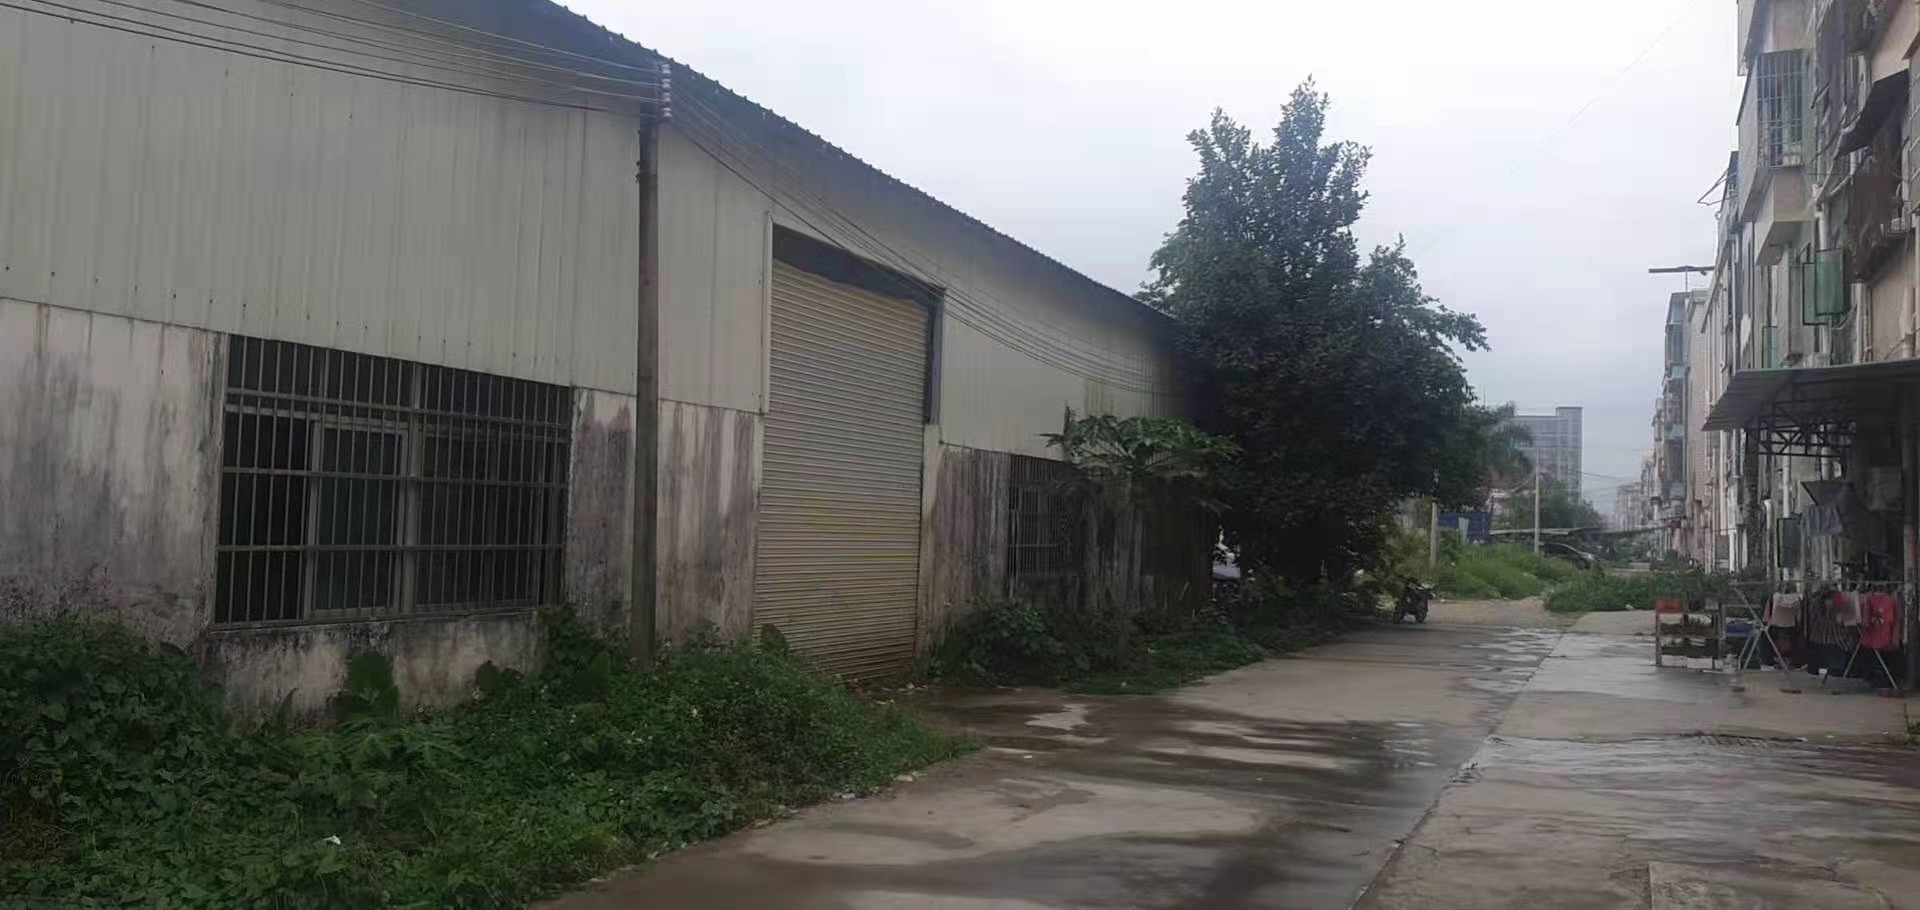 石湾镇滘吓村董屋礼堂后面独院钢构厂可以分租做仓库